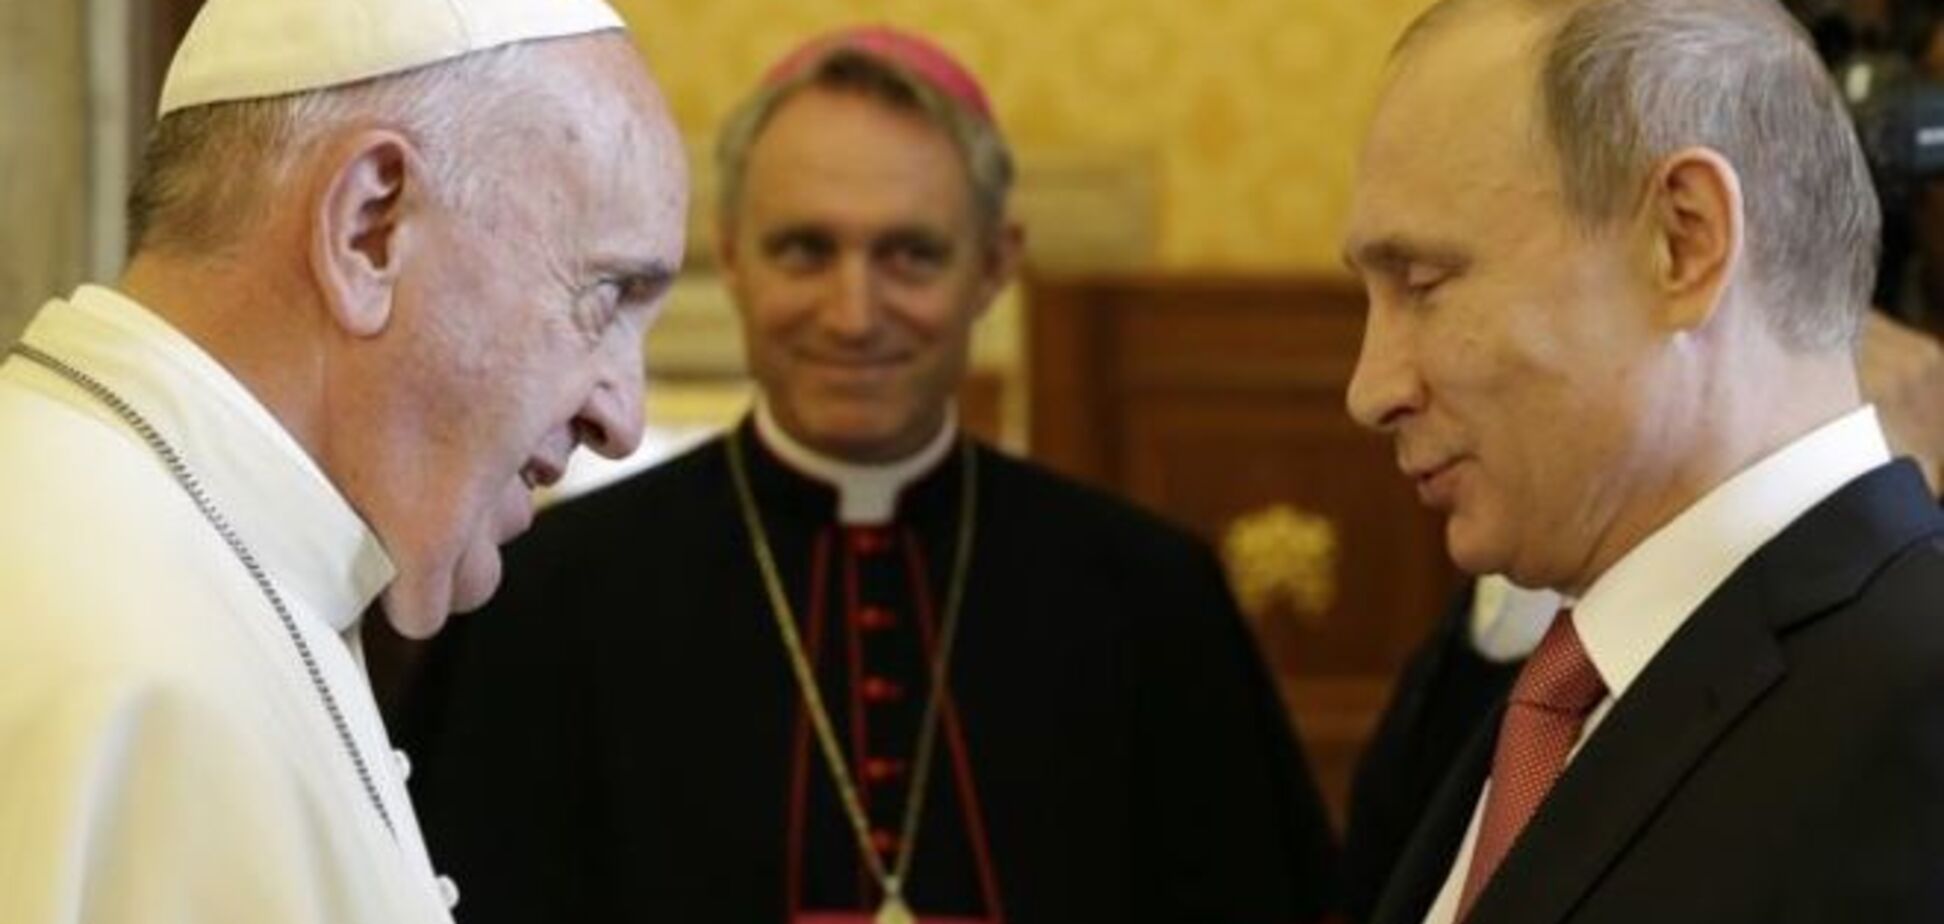 Єпископ пояснив, що означає подарунок Папи Путіну